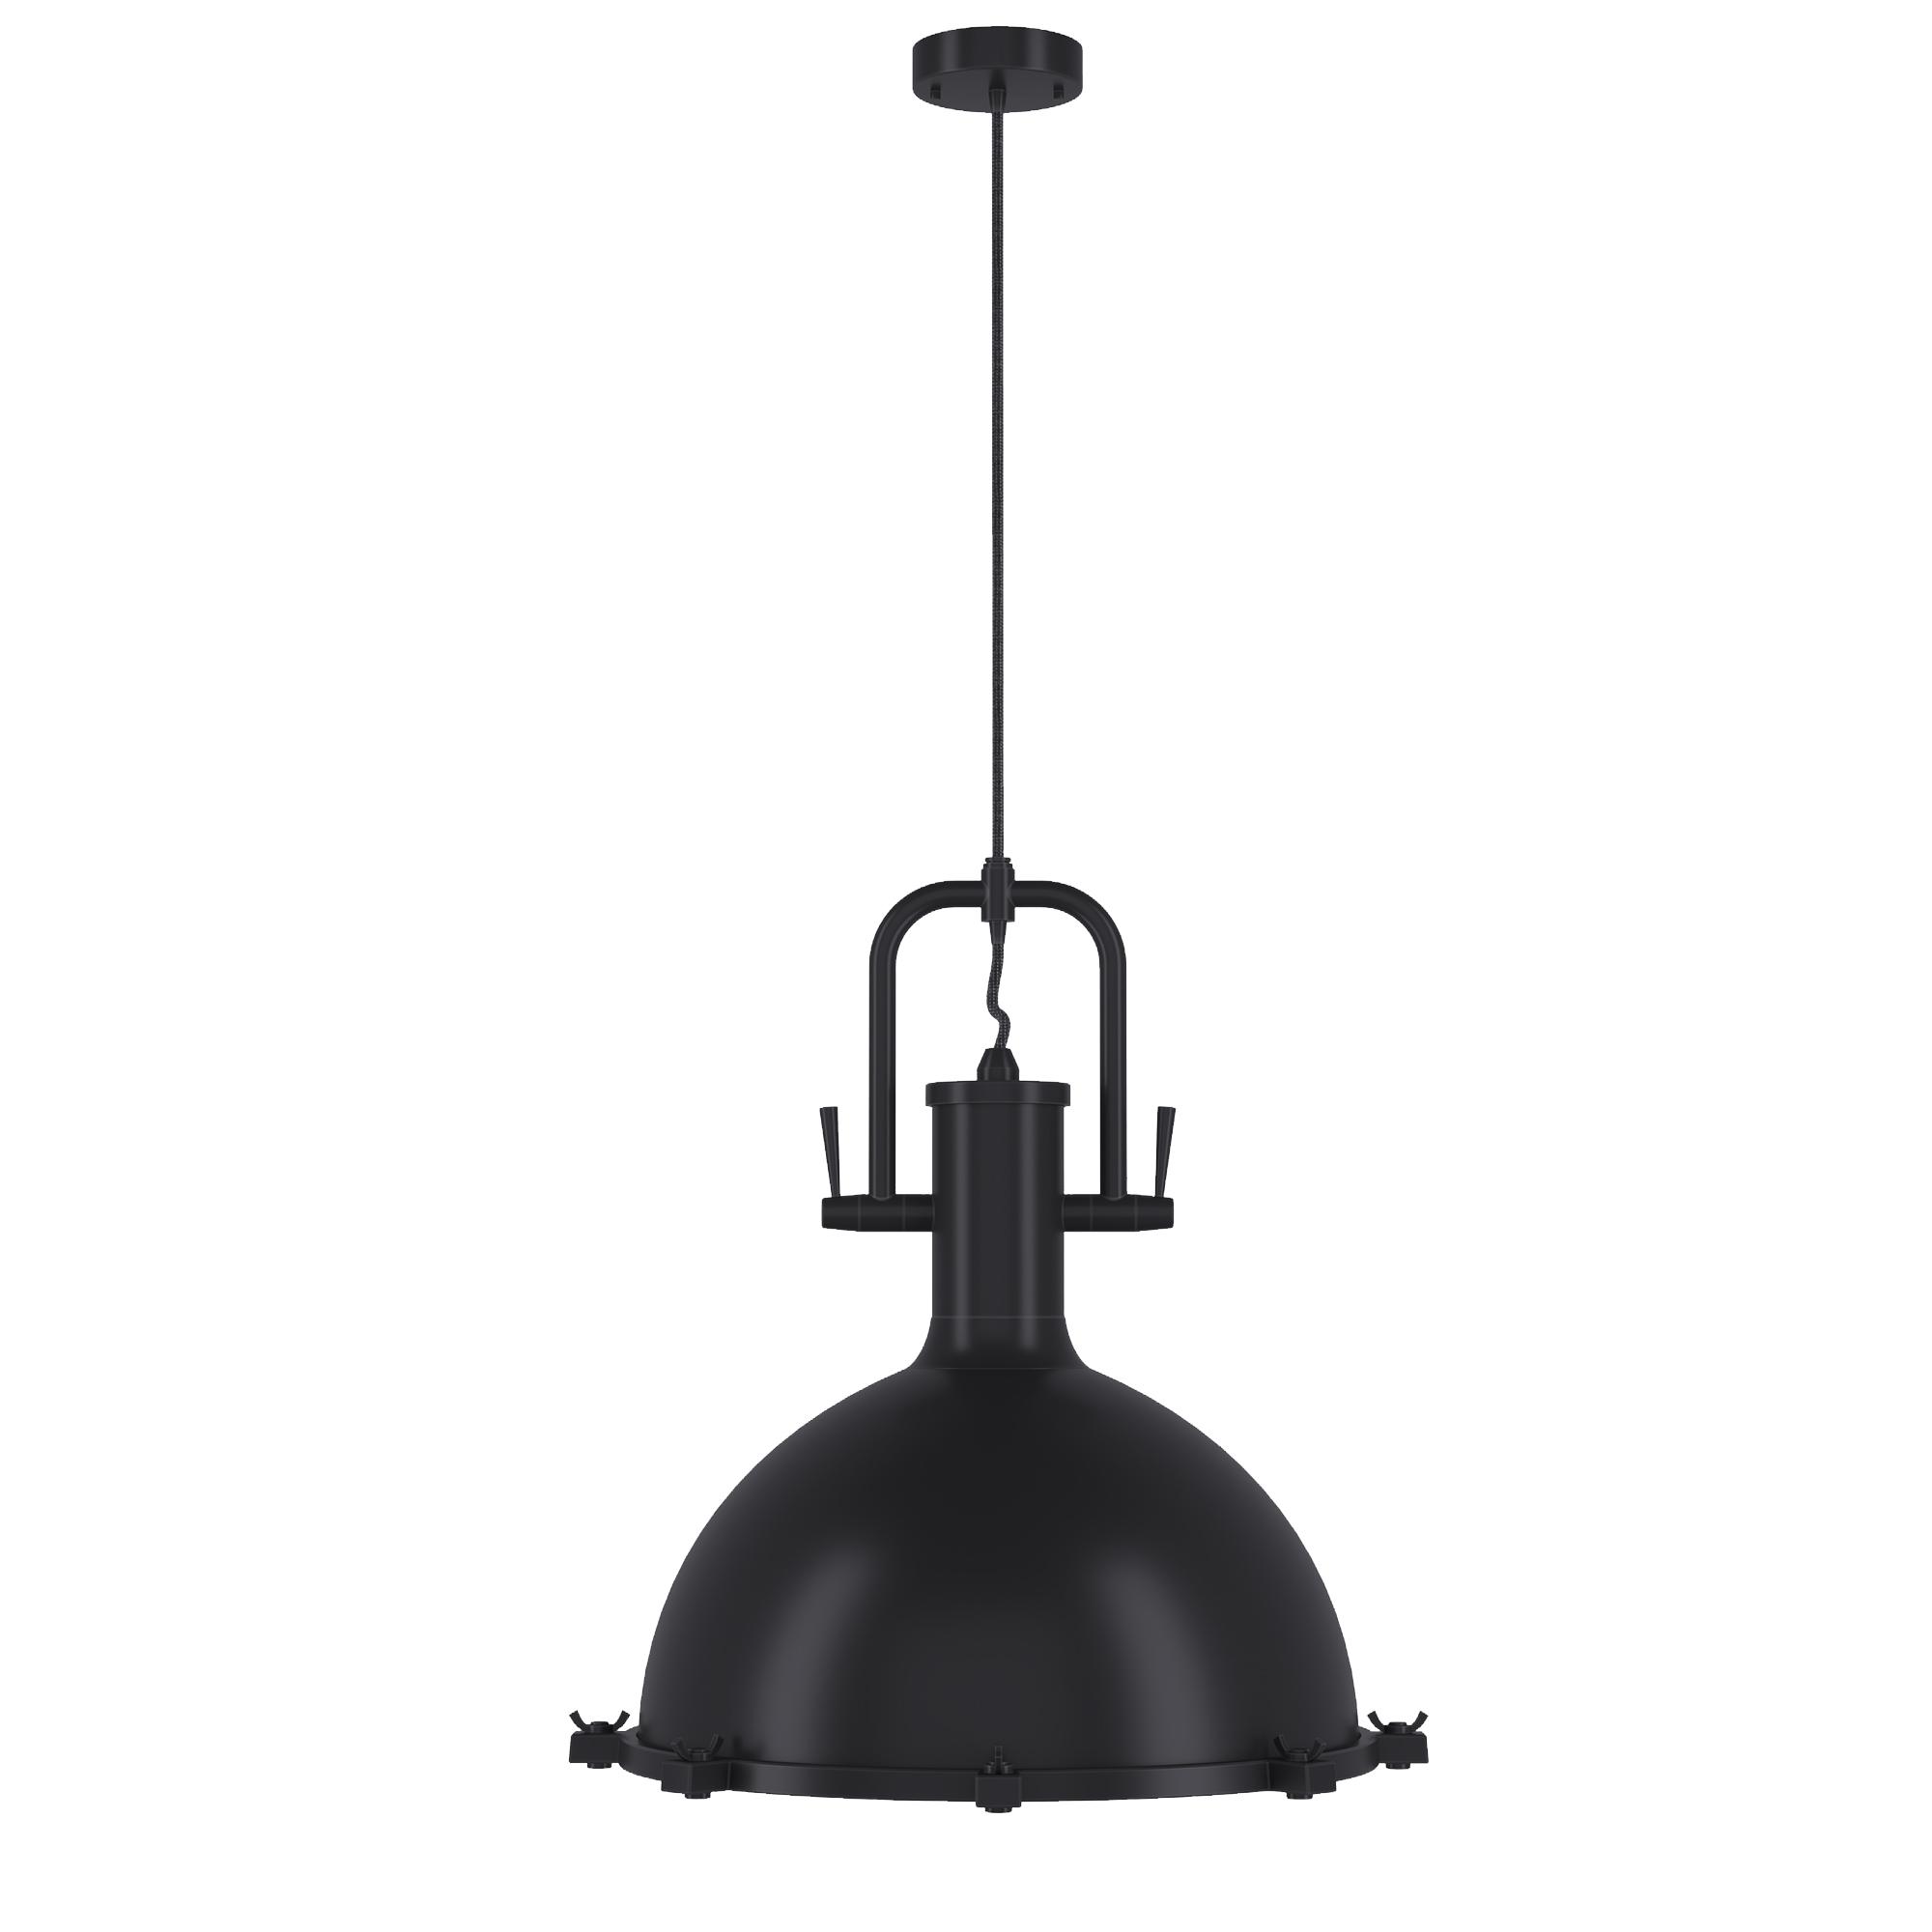 Loft lamp, SKU. 24270 by Pikartlights 3d model